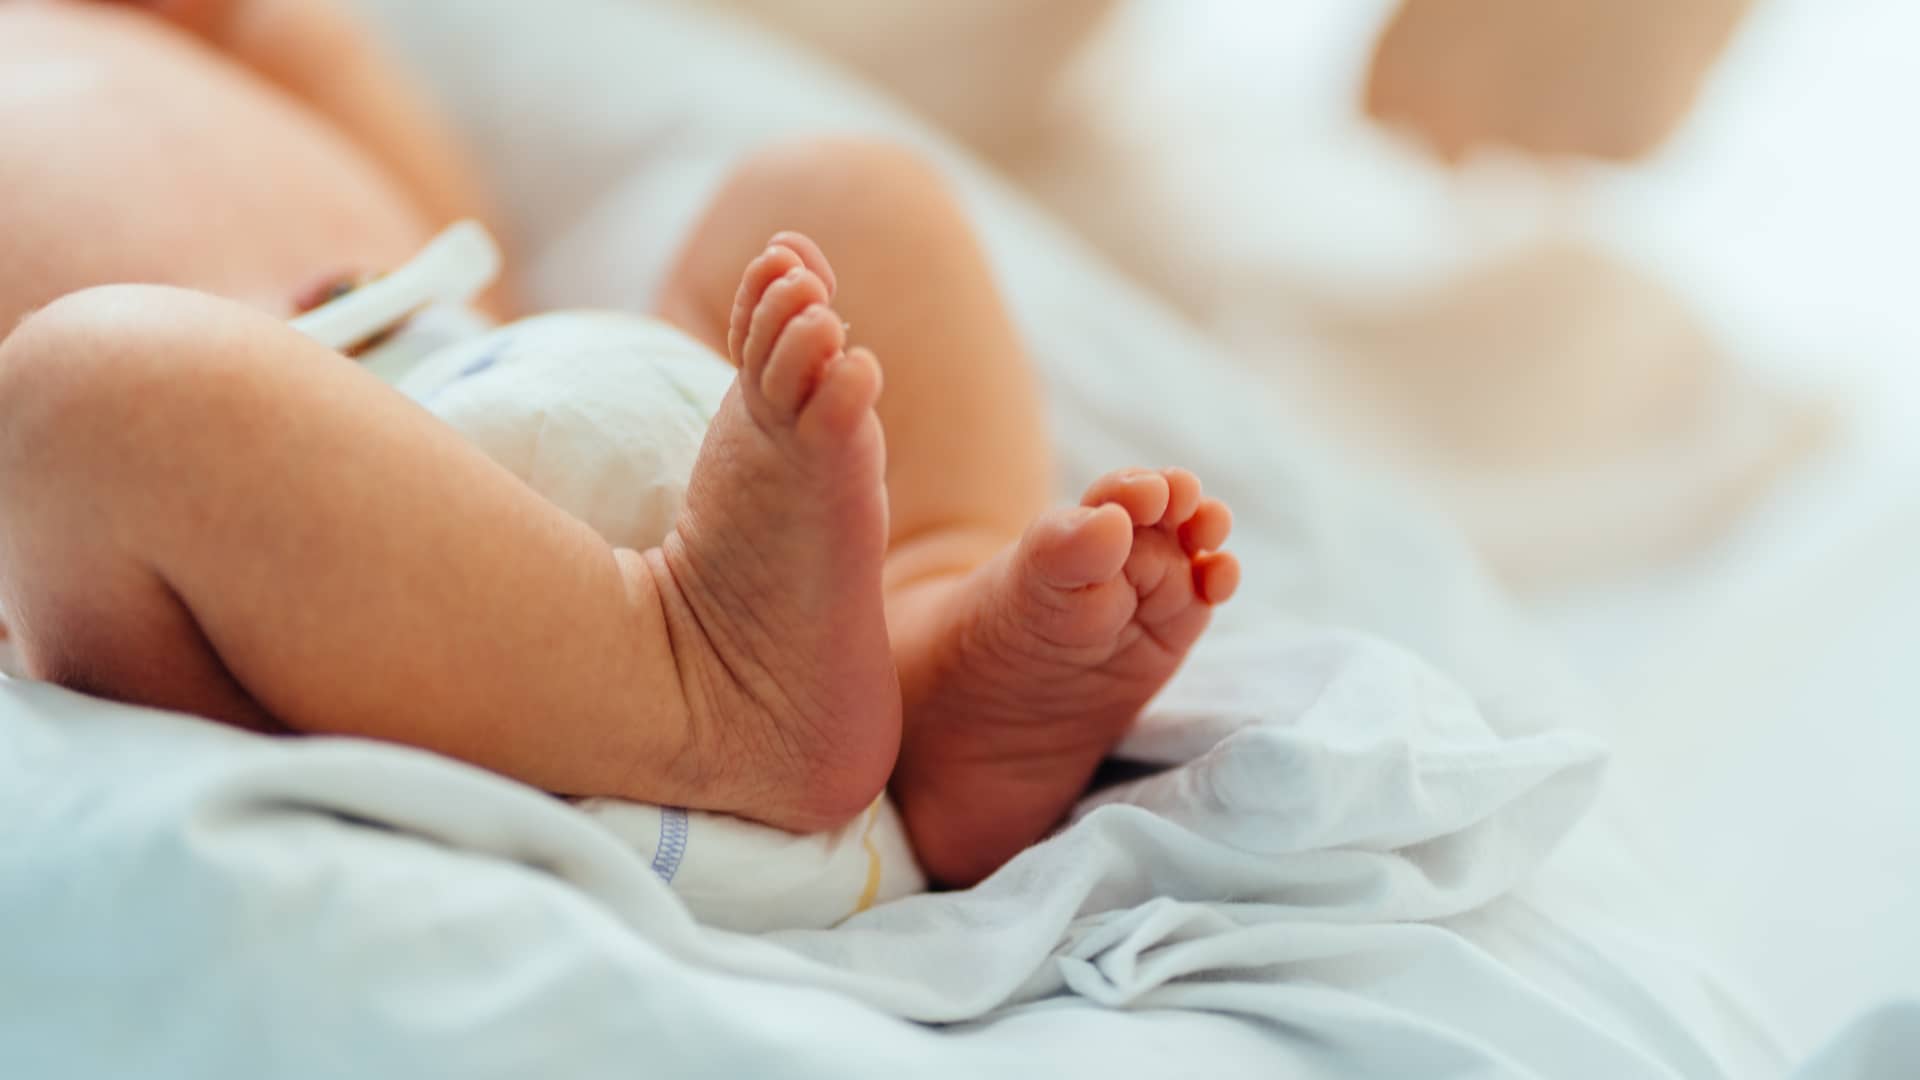 Cuerpo d eun bebé recien nacido solo vestido con un pañal que le mantiene limpio de meconio